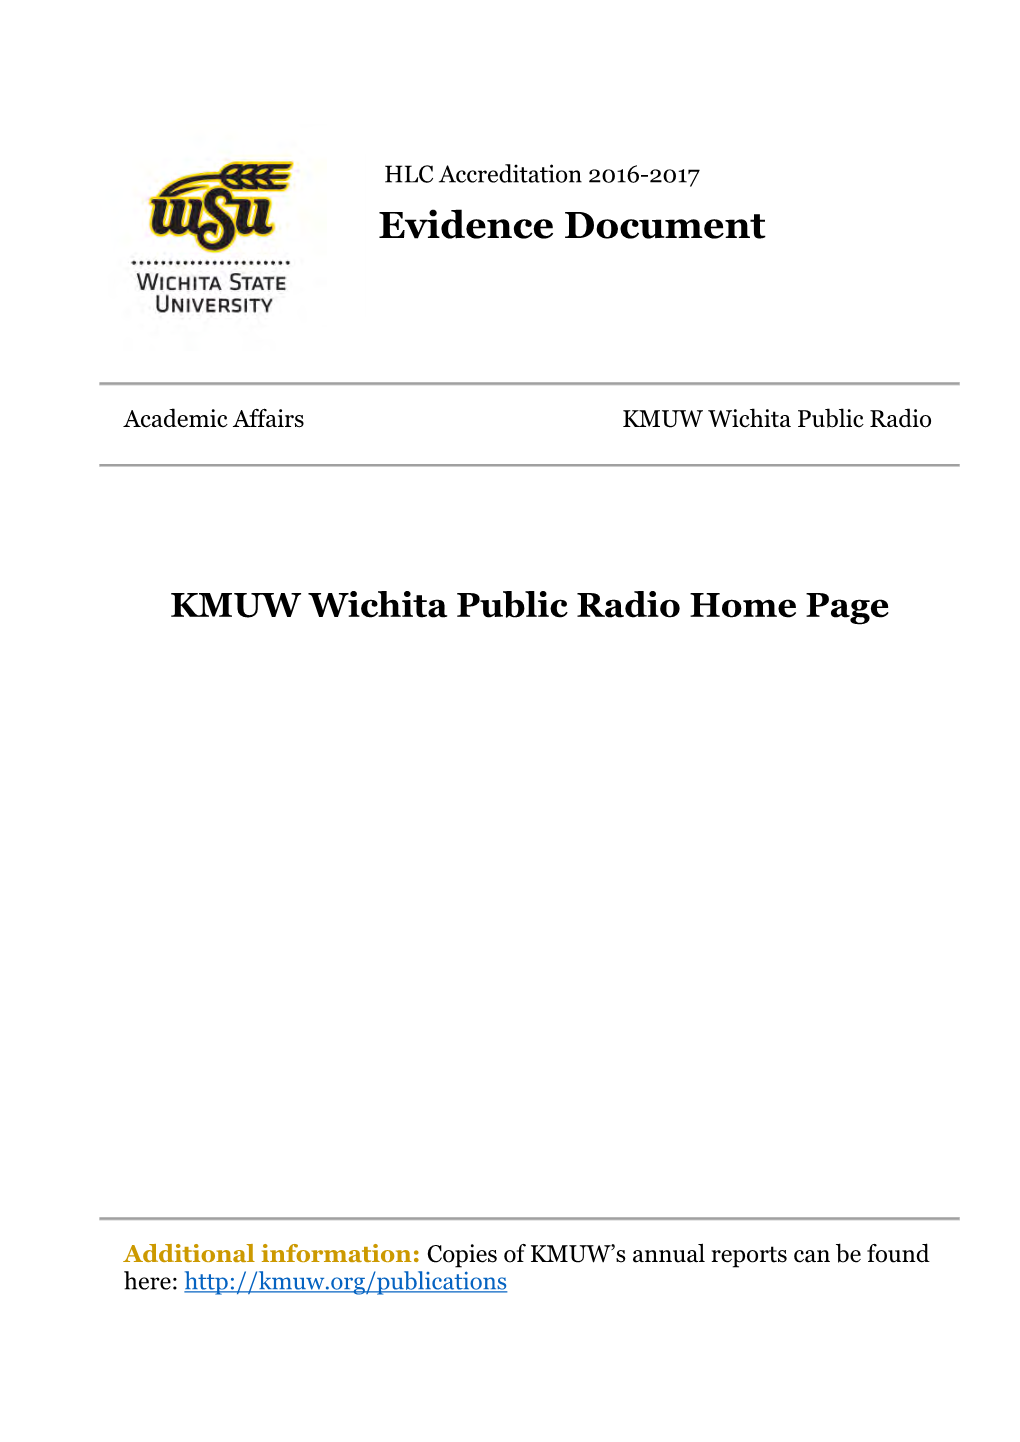 KMUW | Wichita Public Radio